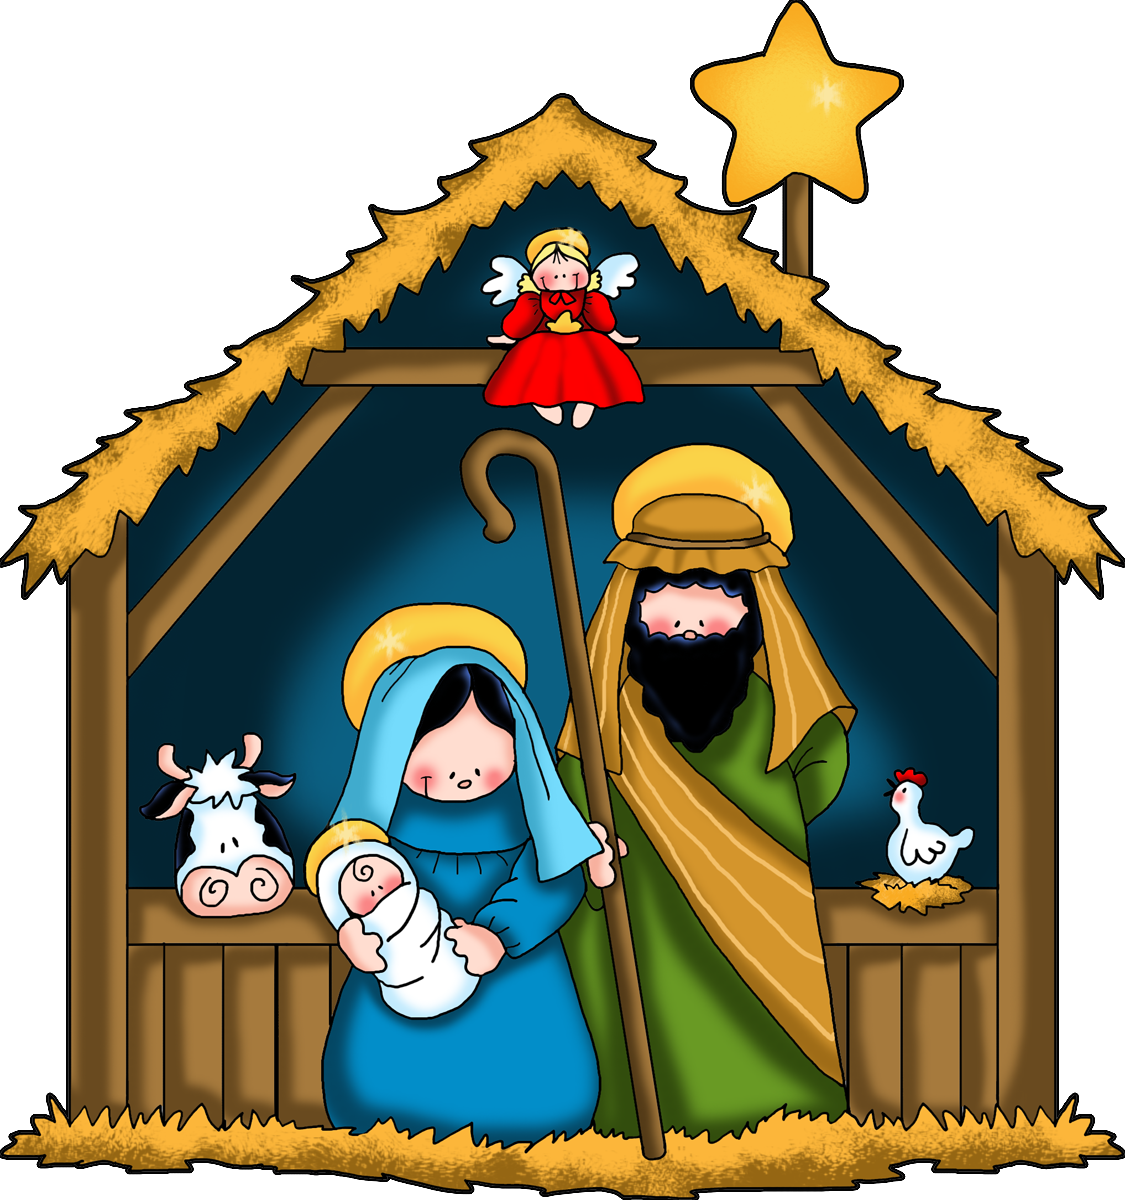 The nativity children.